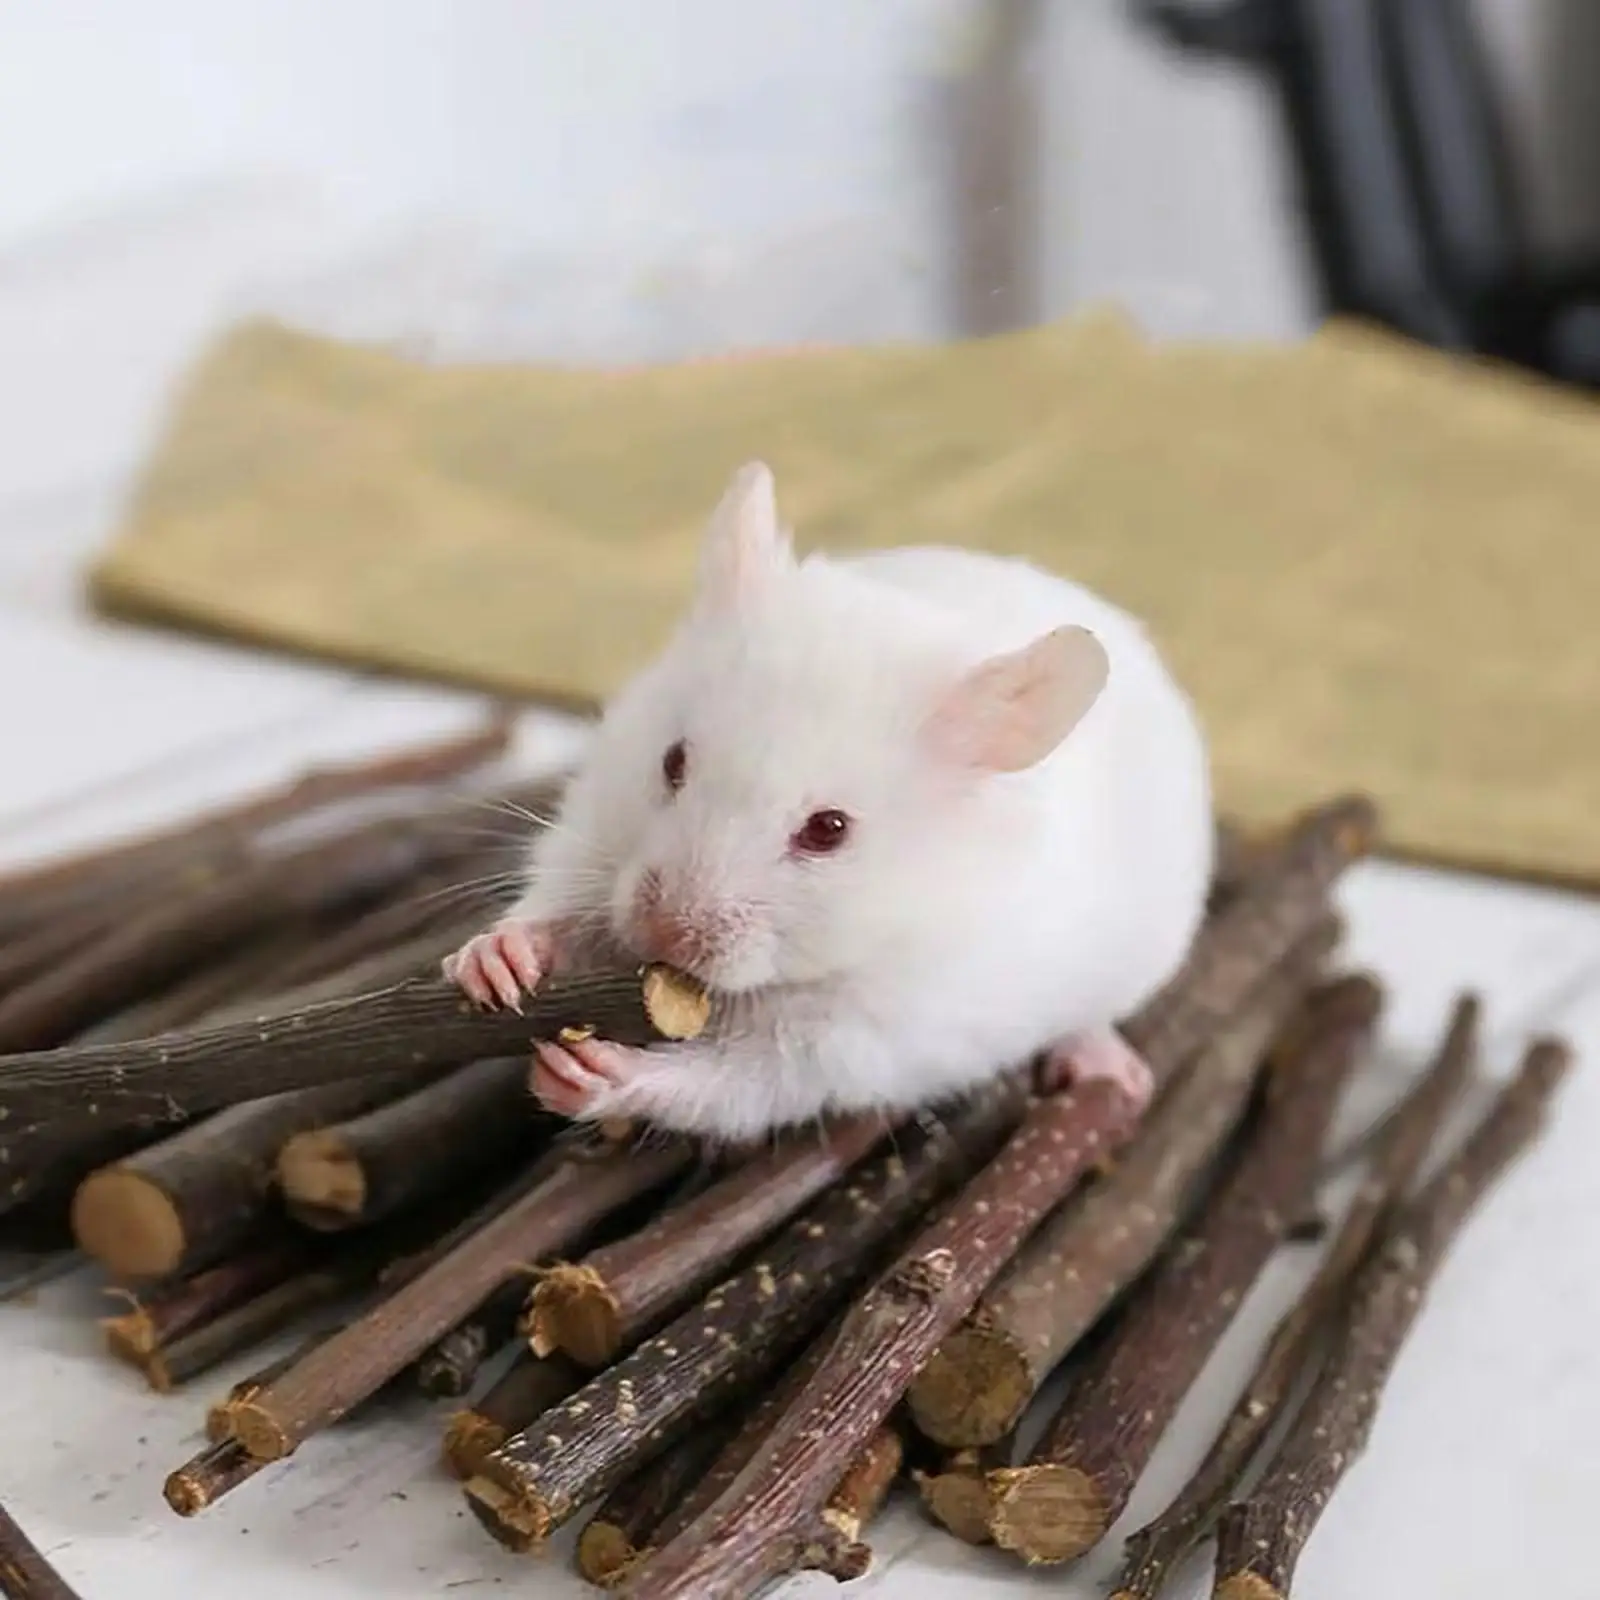 1000G Hamster Chew Sticks Molar Brancheing Twigs Accessories Wood Rat Groundhog Squirrels